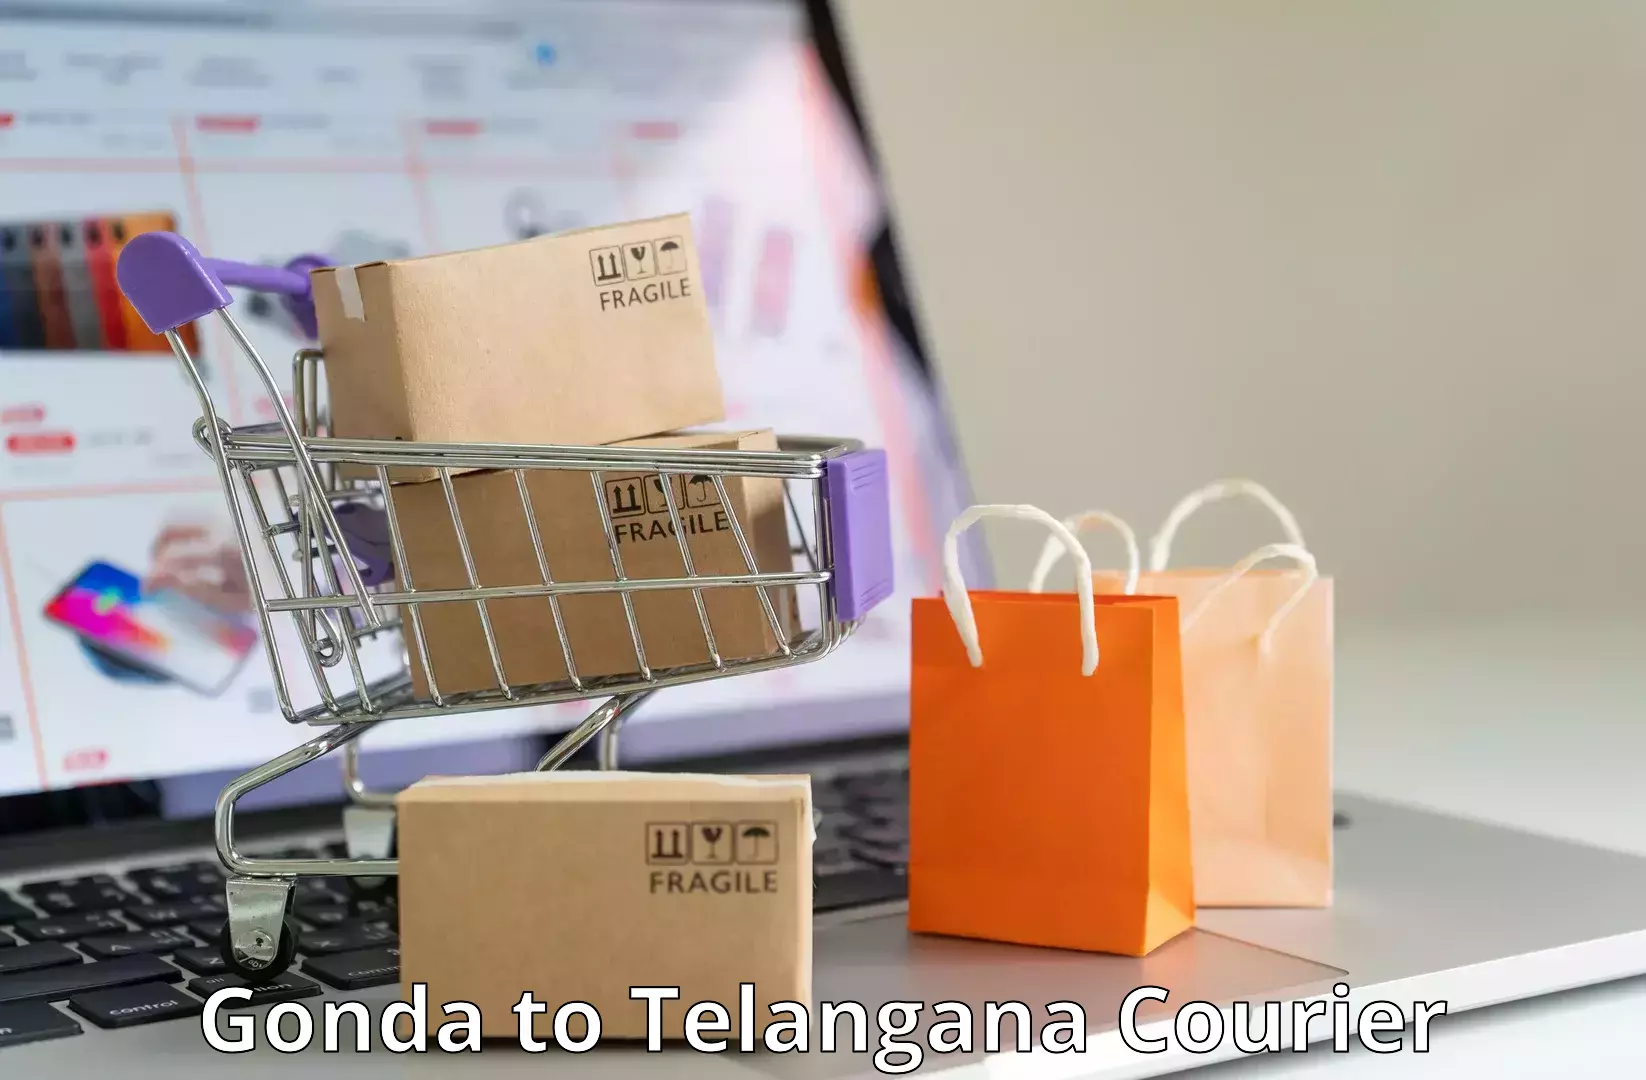 Quality courier partnerships Gonda to Khammam